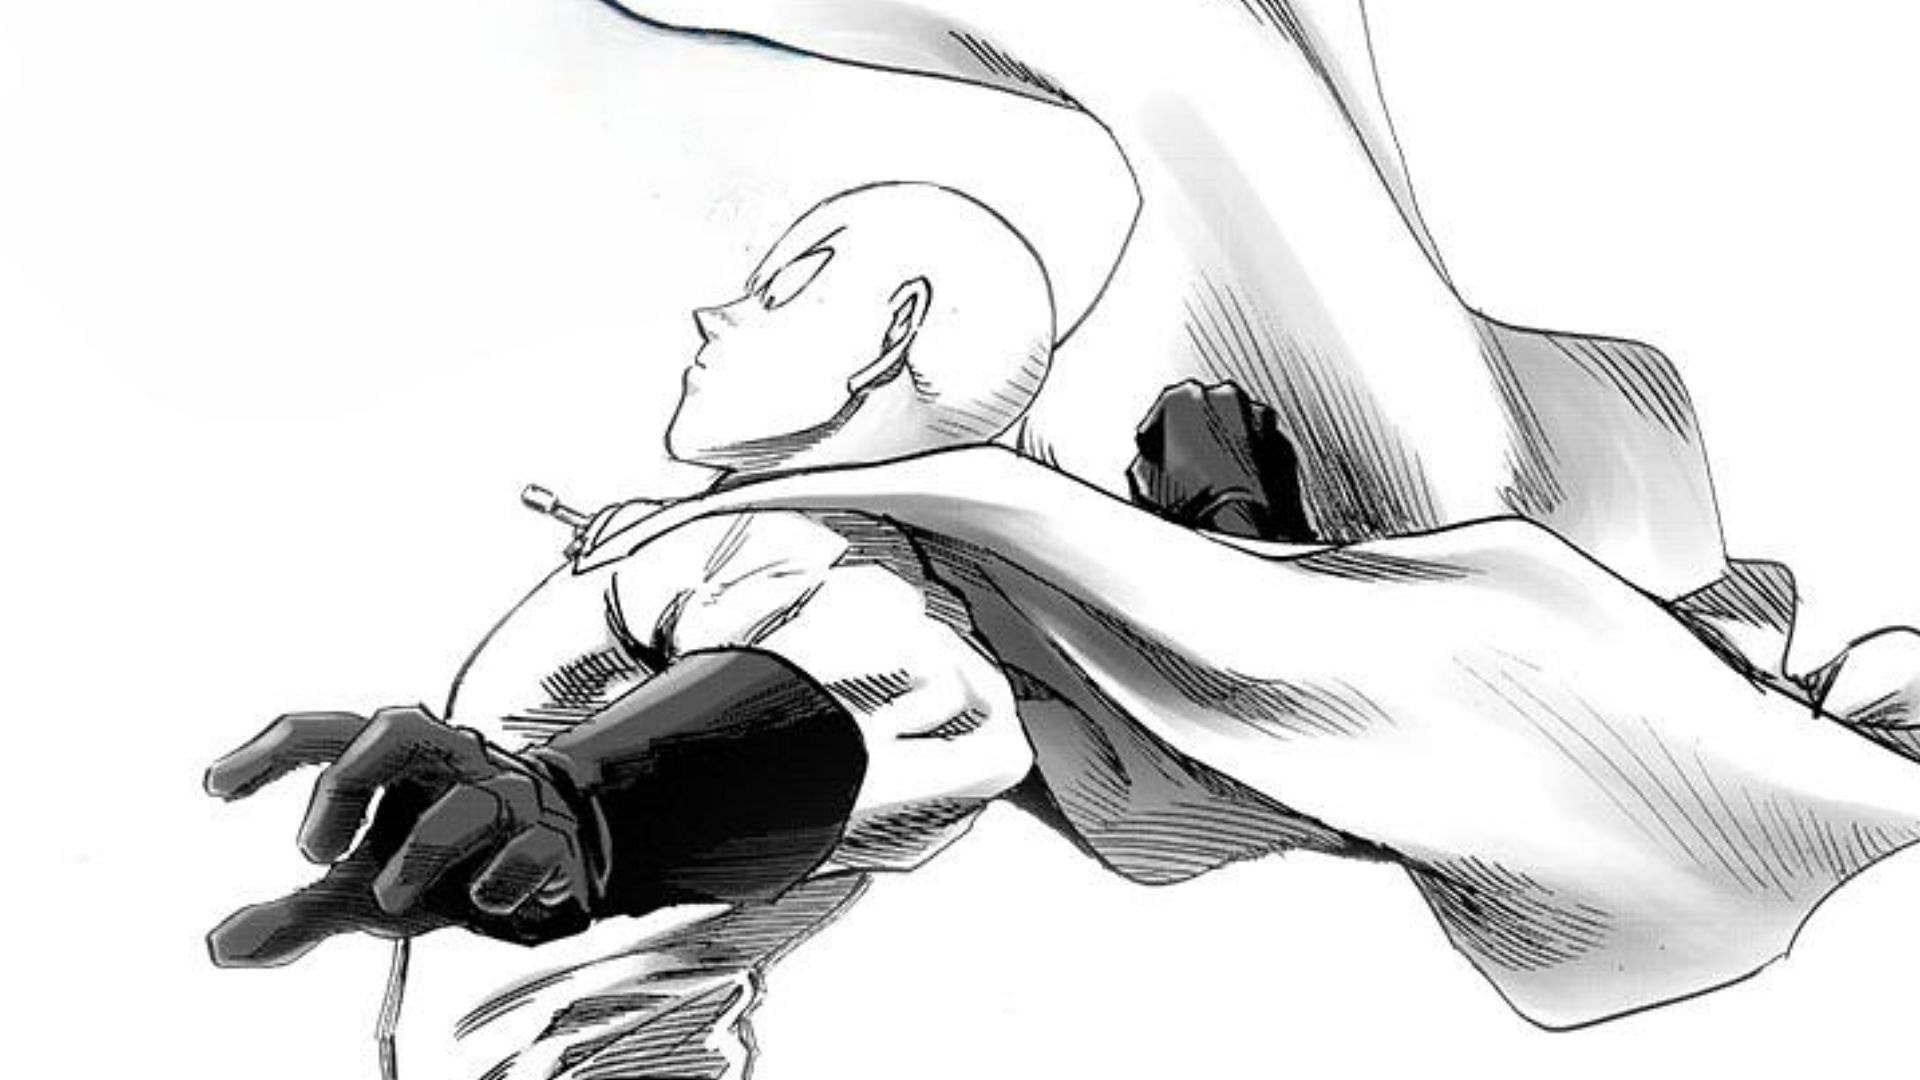 Saitama as seen in the One Punch Man manga (Image via Shueisha)